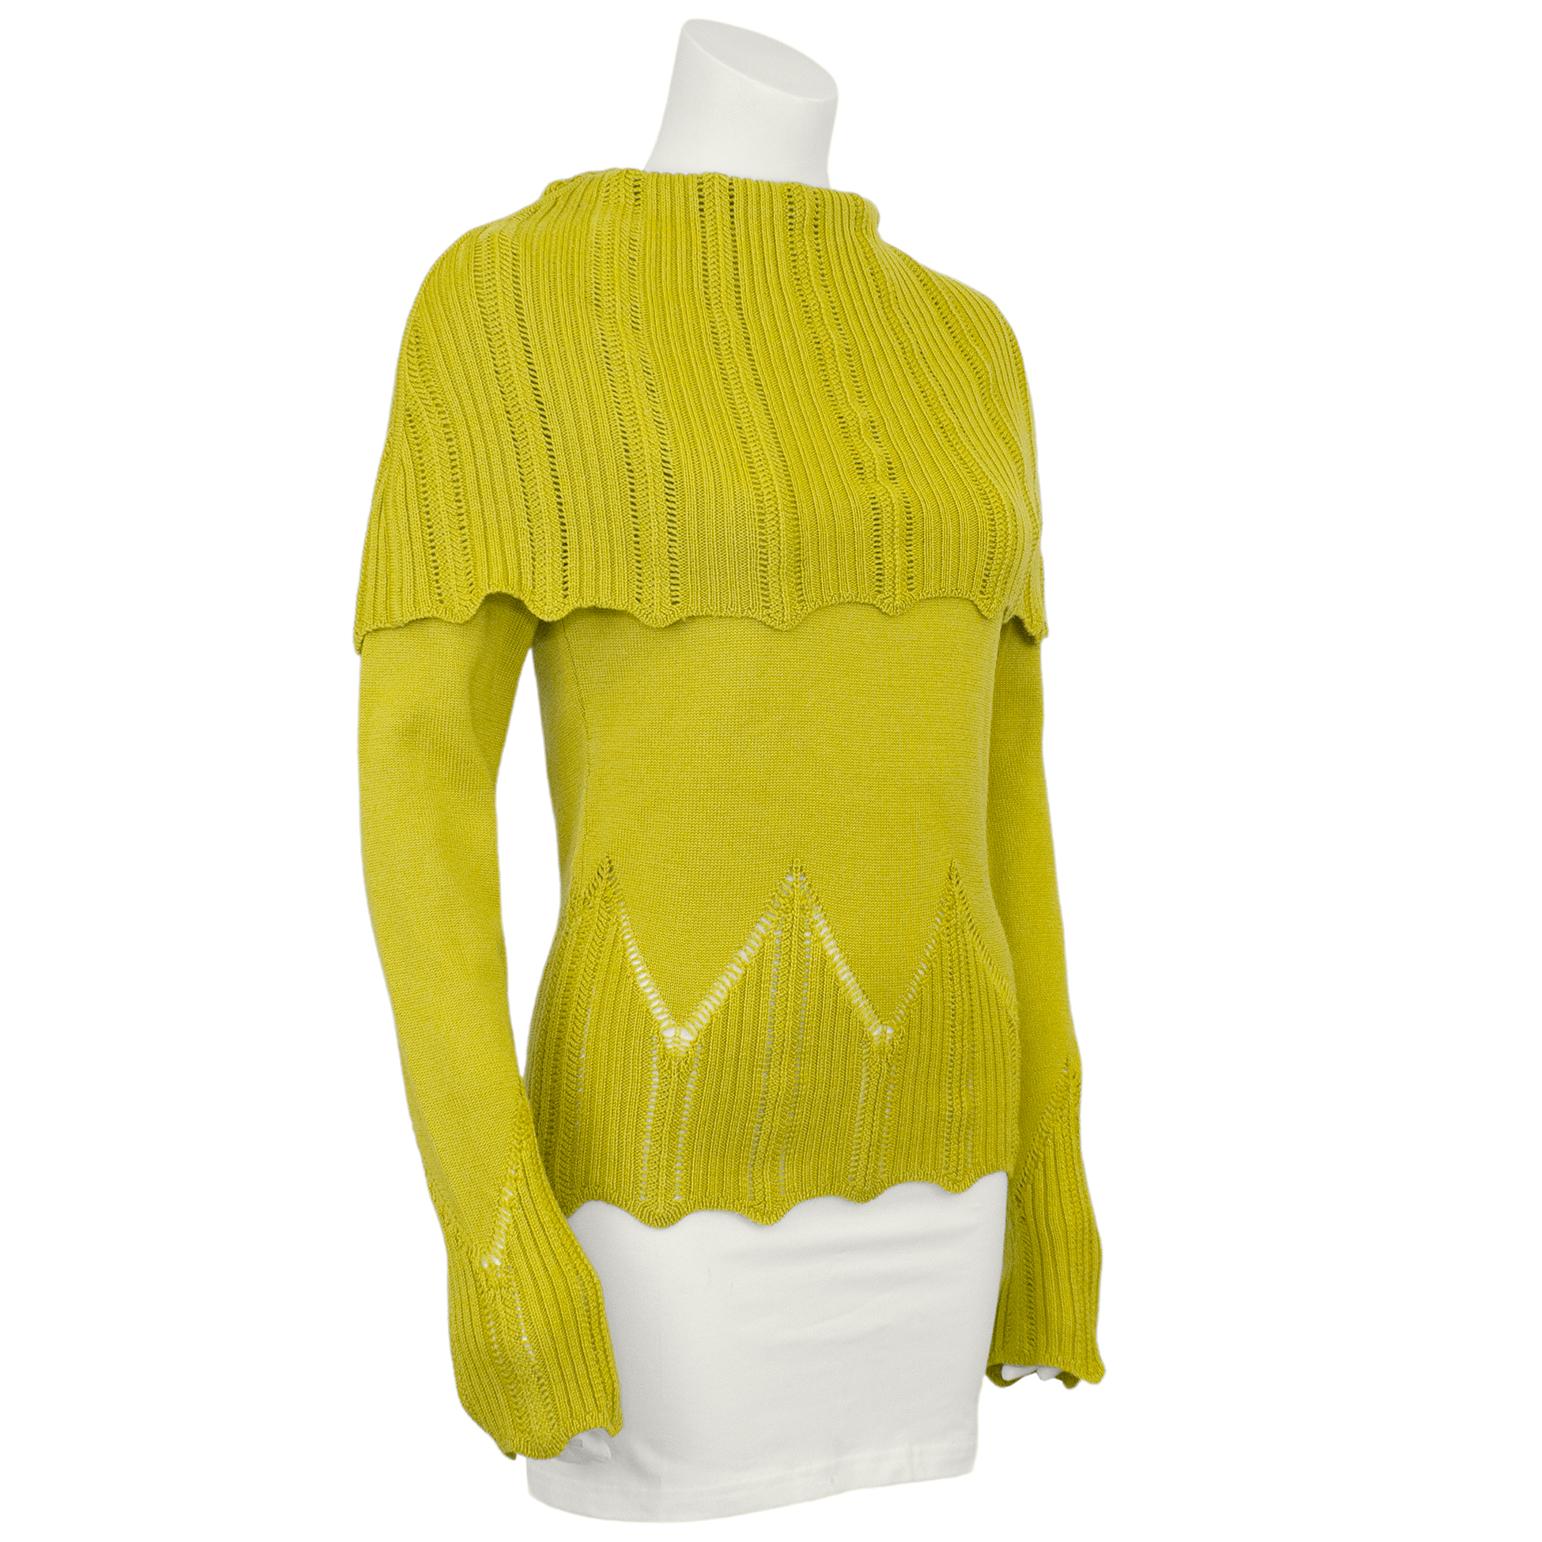 Pull-over en laine chartreuse Christian Dior du début des années 2000. Le pull est fabriqué à partir d'un tricot serré au niveau des bras et du corps, mais l'épaule, les poignets et l'ourlet se caractérisent par un tricot à œillets plus ouvert, avec